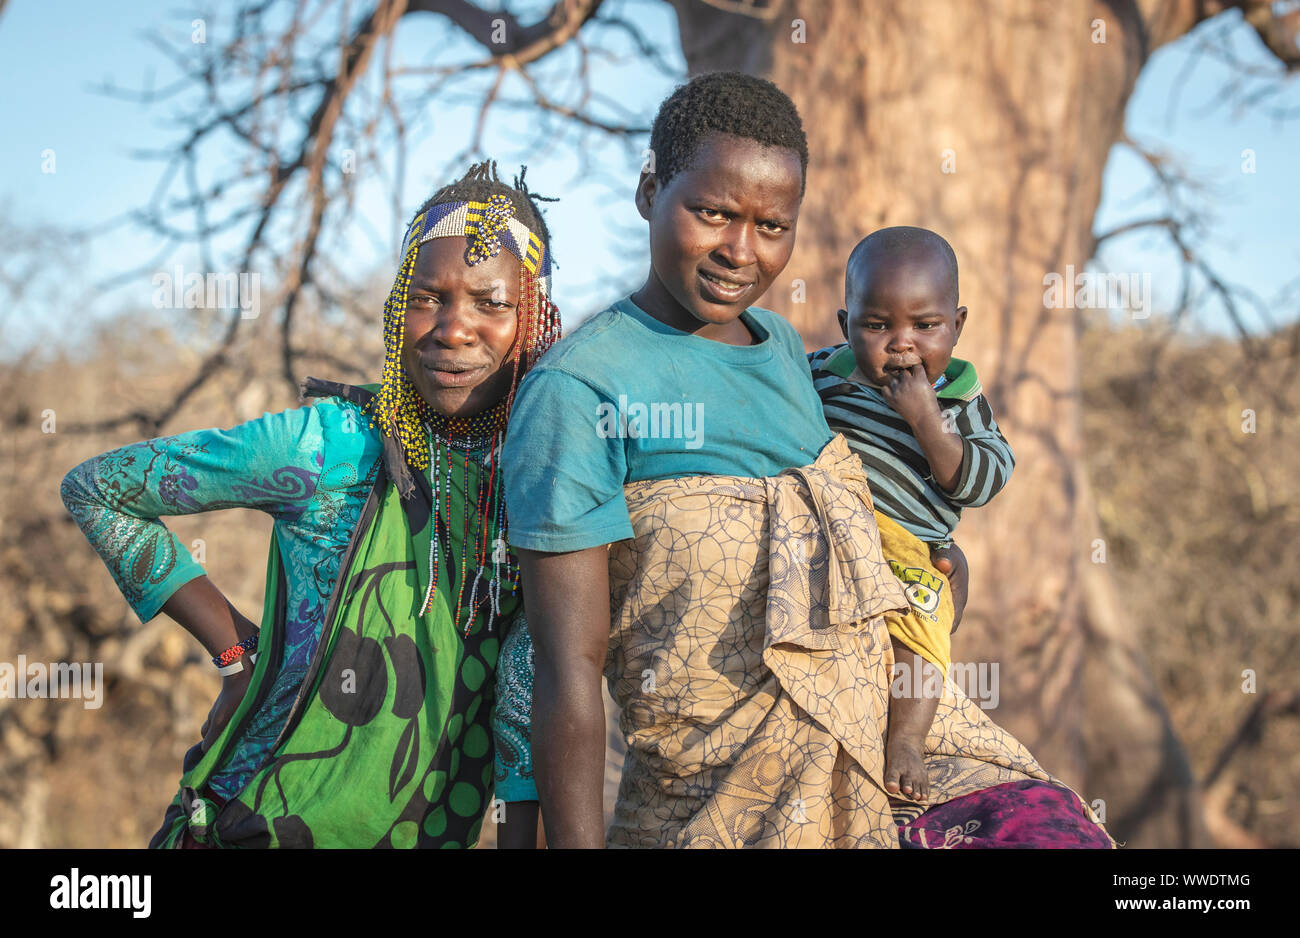 El lago Eyasi, Tanzania, 11 de septiembre de 2019: Hadzabe señoras en la naturaleza Foto de stock